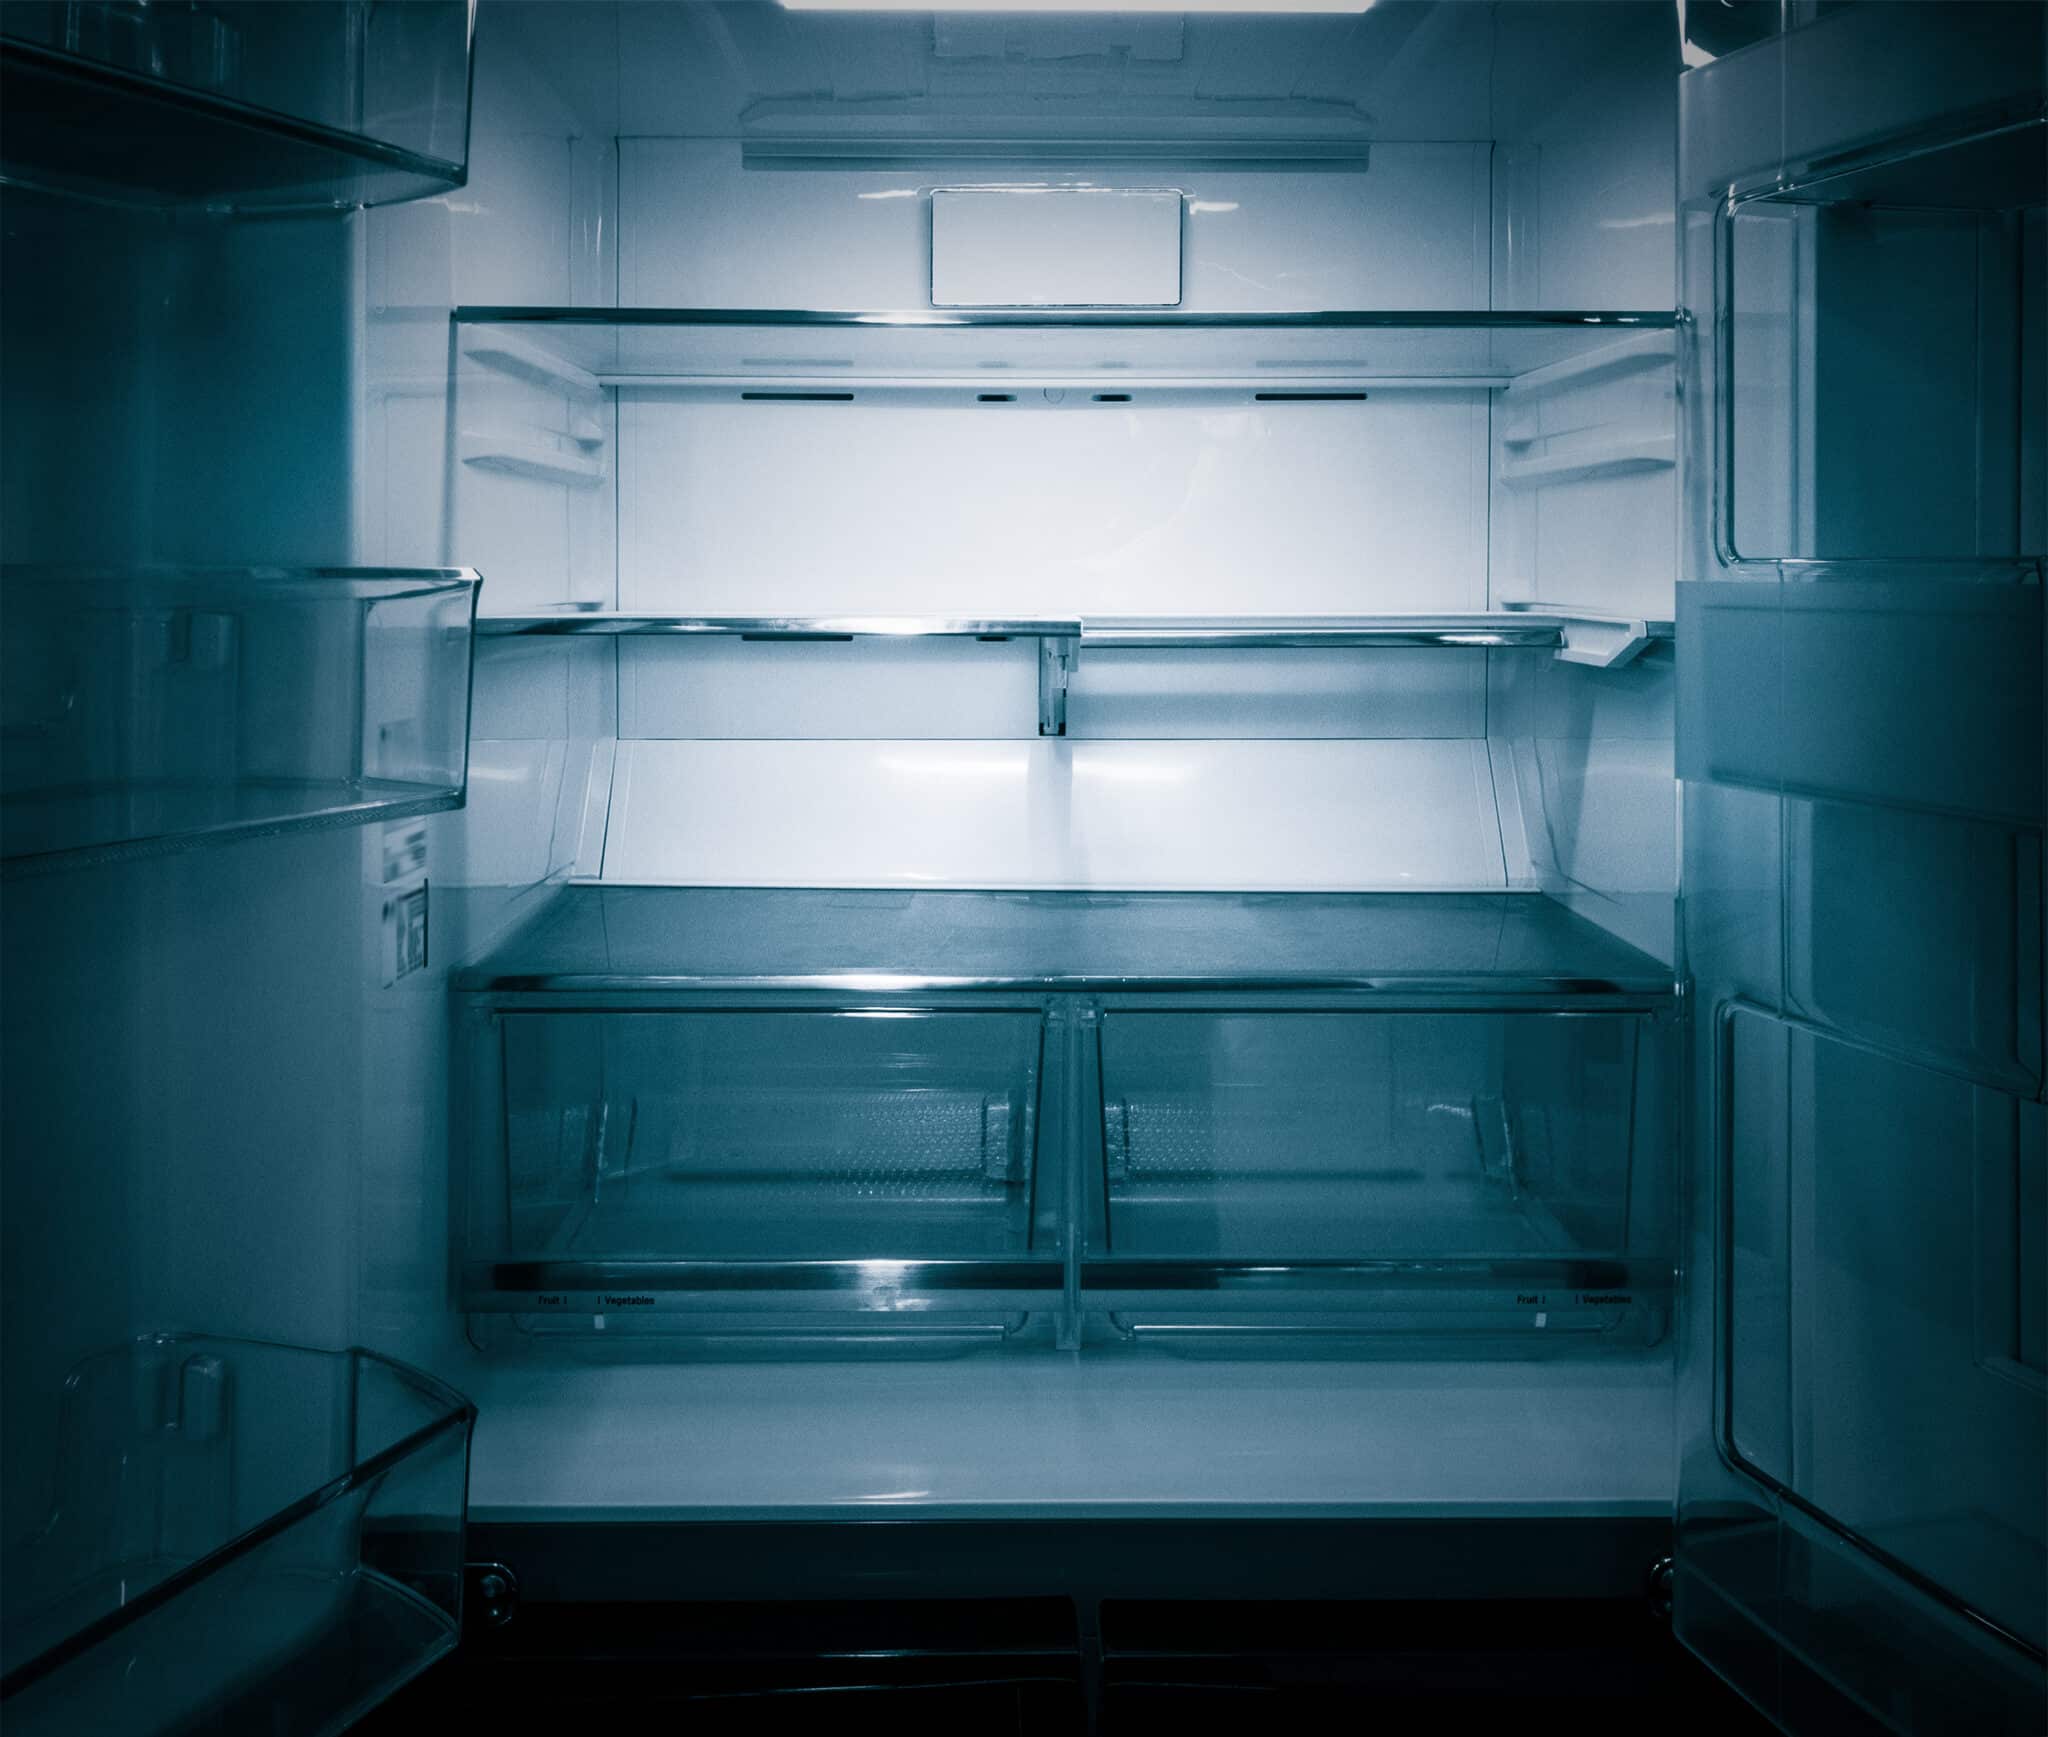 Qu'est-ce qui consomme le plus entre le frigo ou le congélateur ?